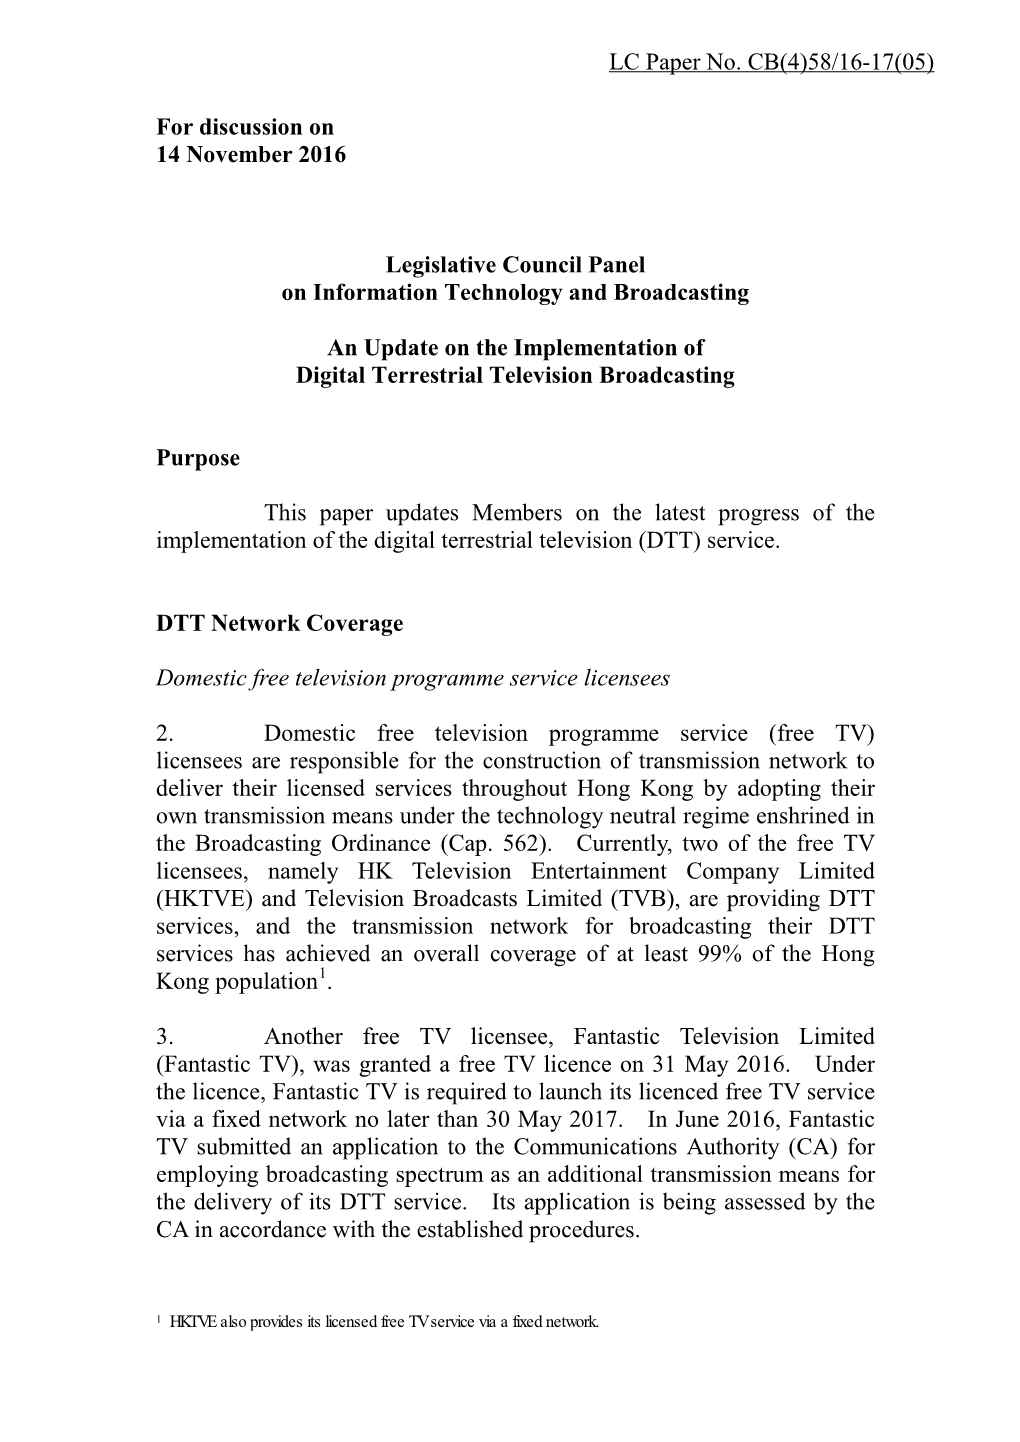 Legco ITB Panel Paper for DTT Eng (14 November 2016)